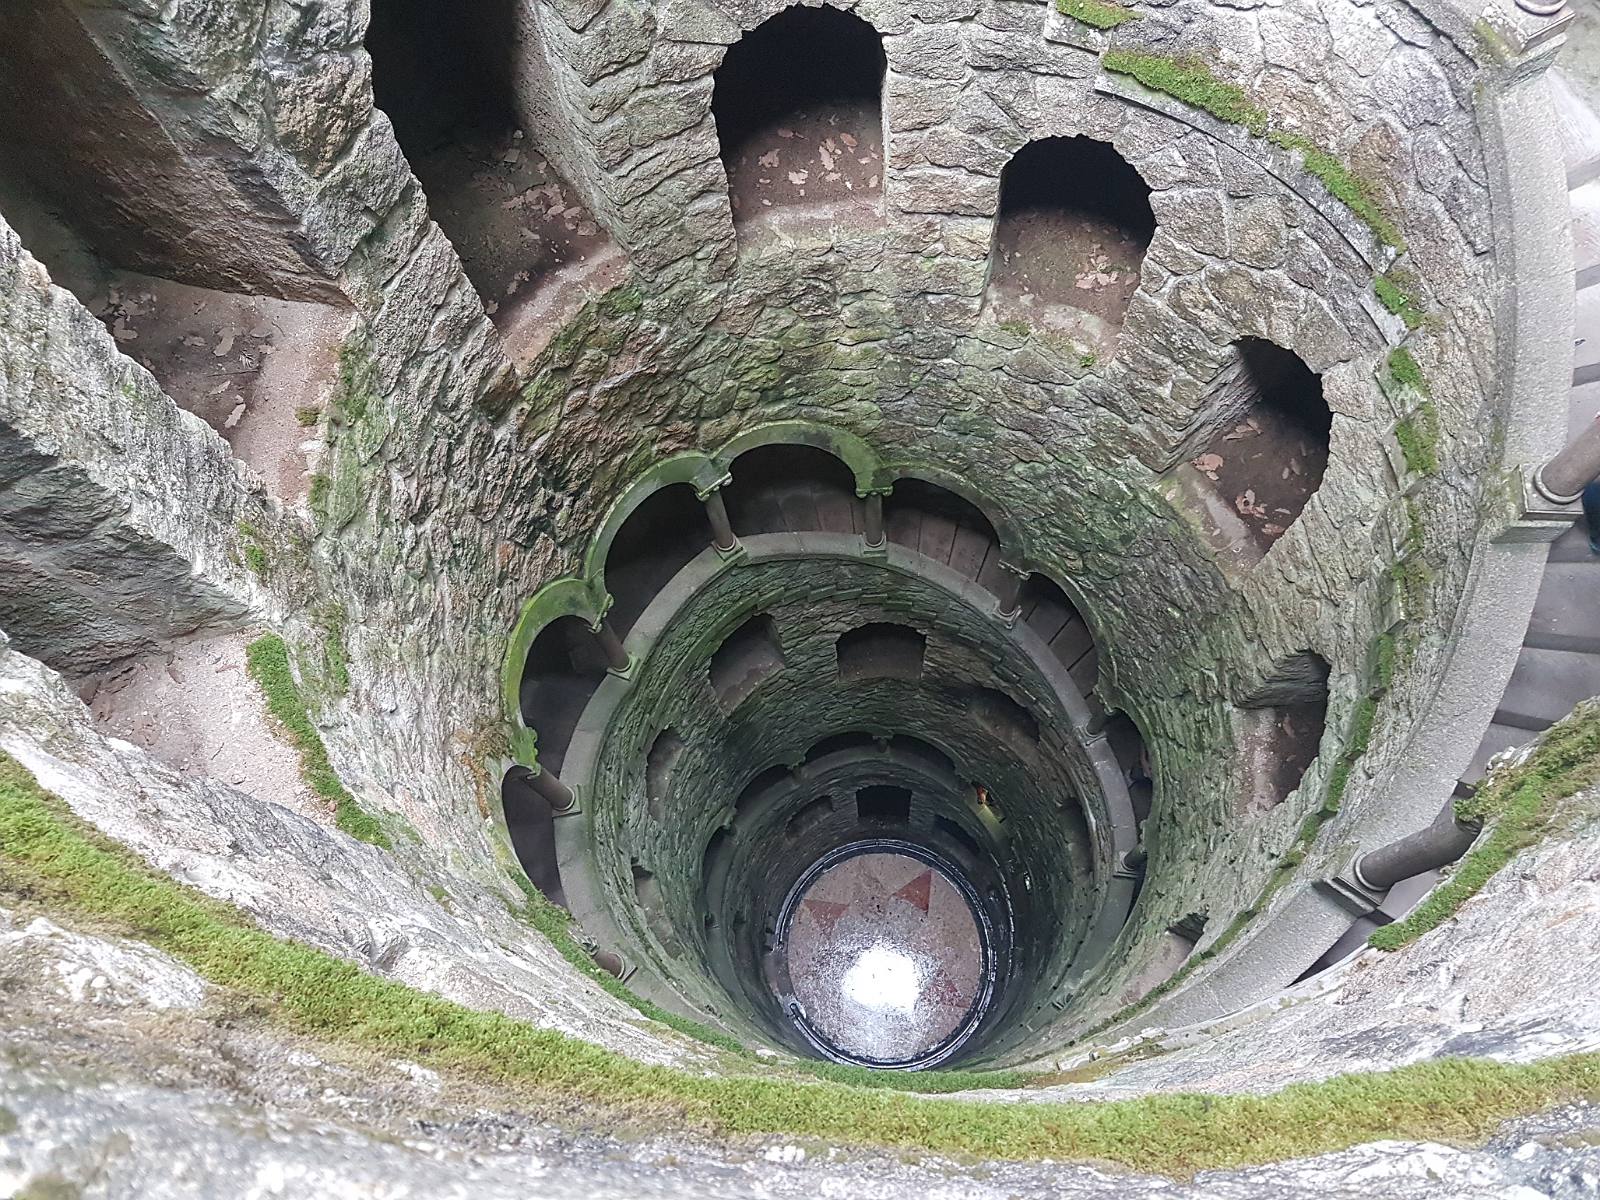 1. Podziemna wieża z zakręconymi schodami w Sintrze w Portugalii.